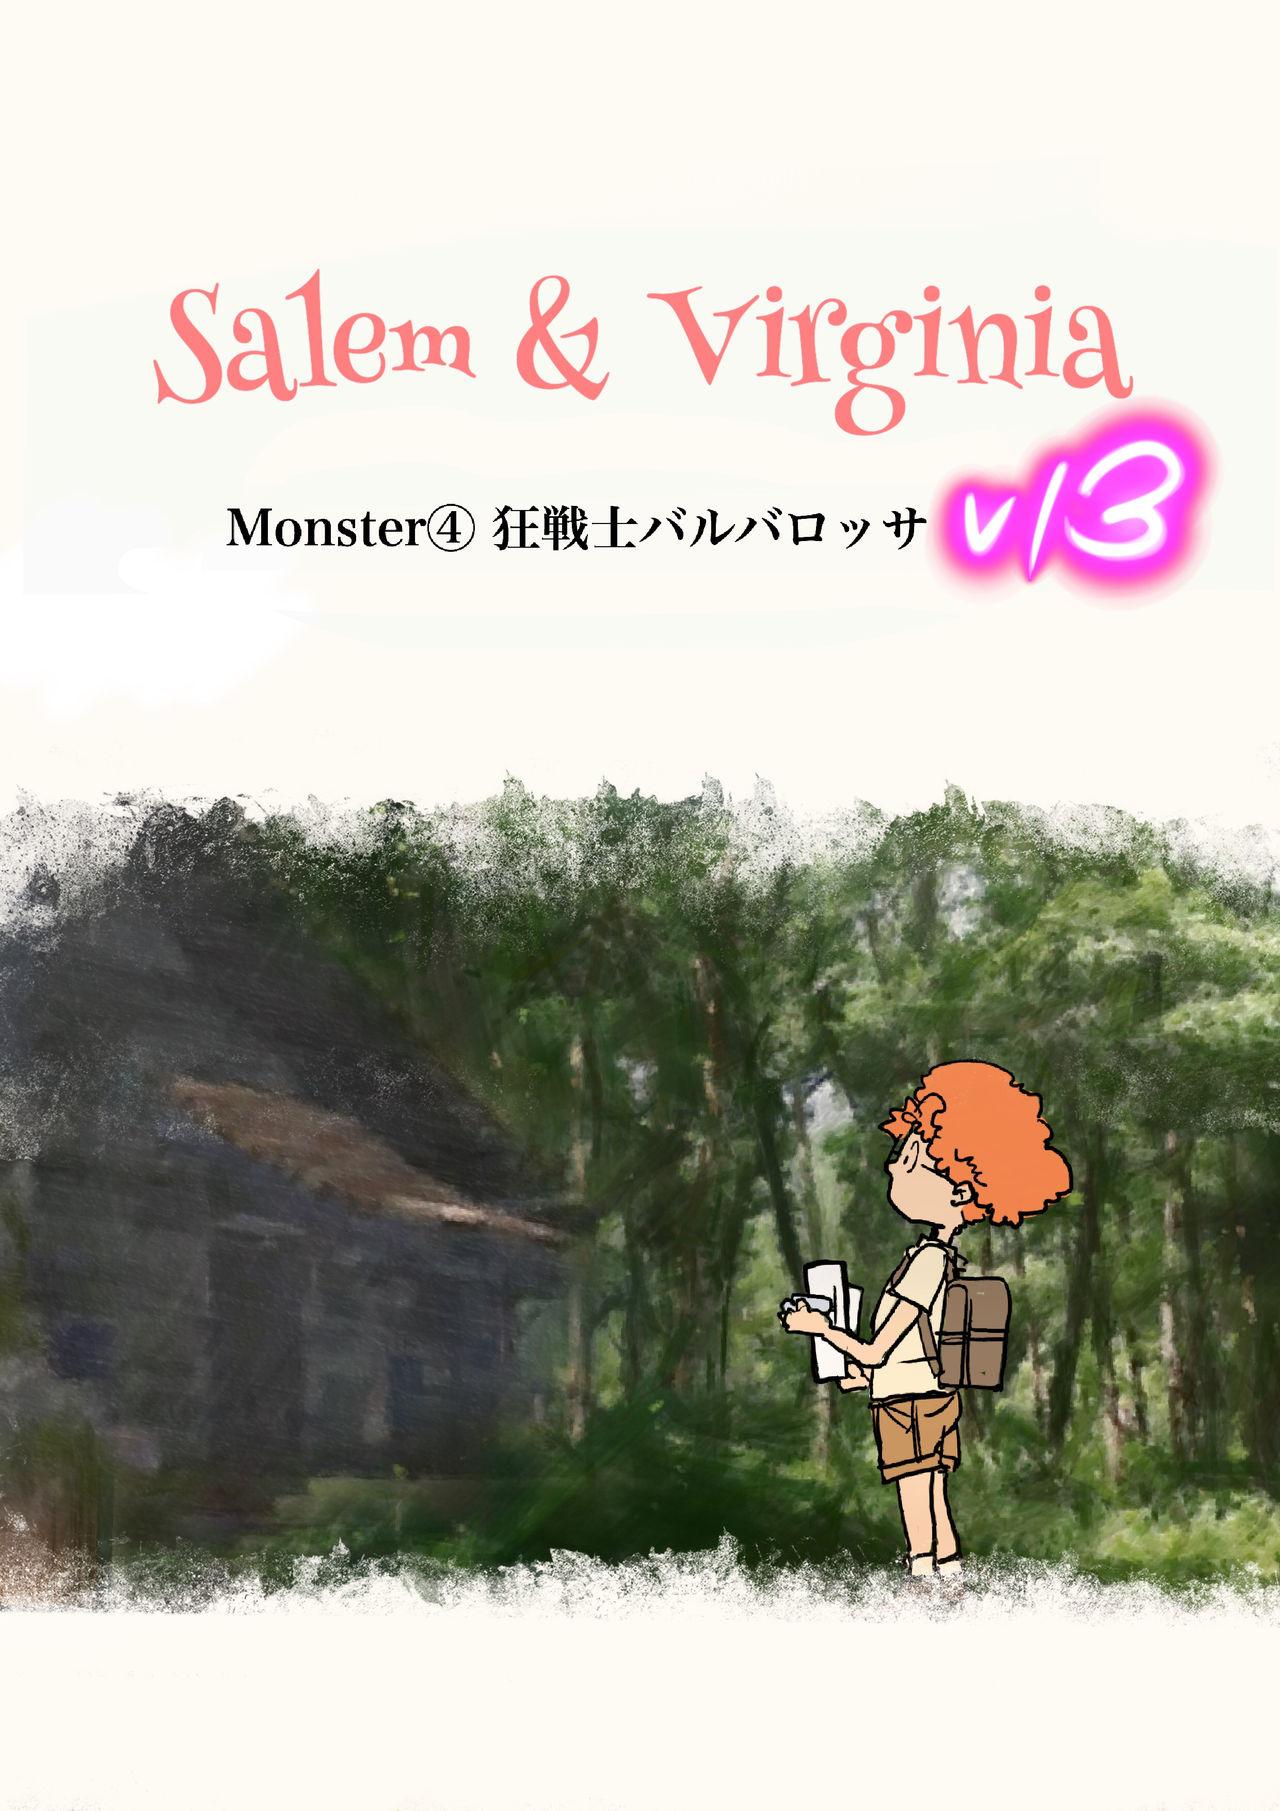 Salem & Virginia 125